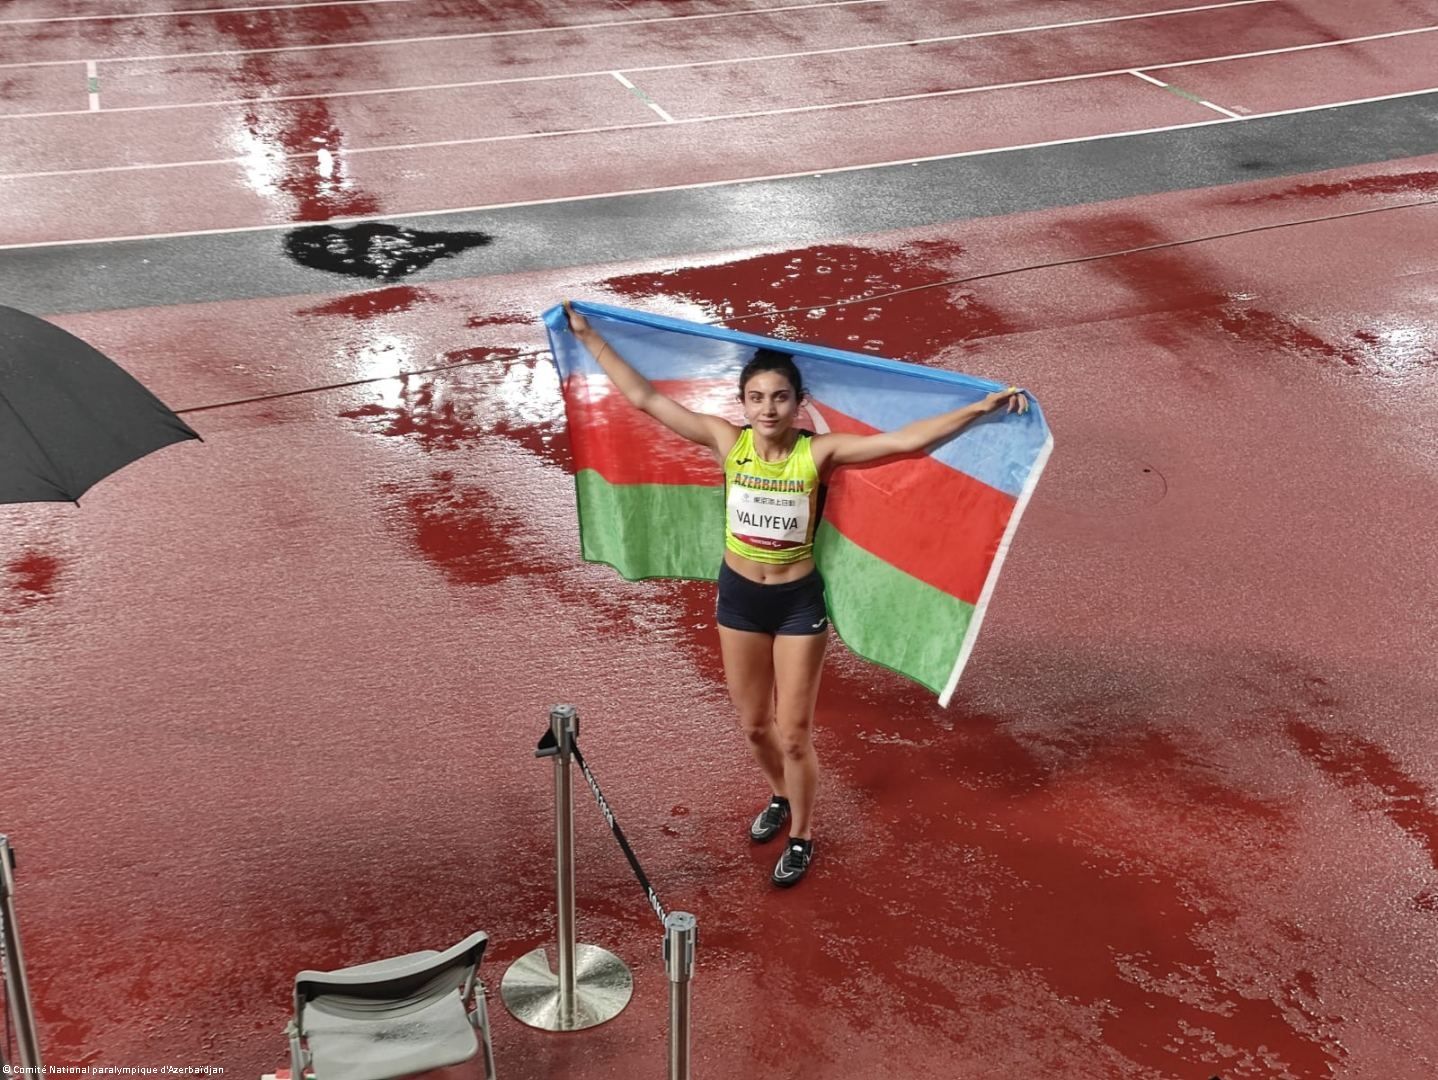 La coureuse azerbaïdjanaise Lamiya Veliyeva gagne la médaille d'argent aux Jeux paralympiques de Tokyo